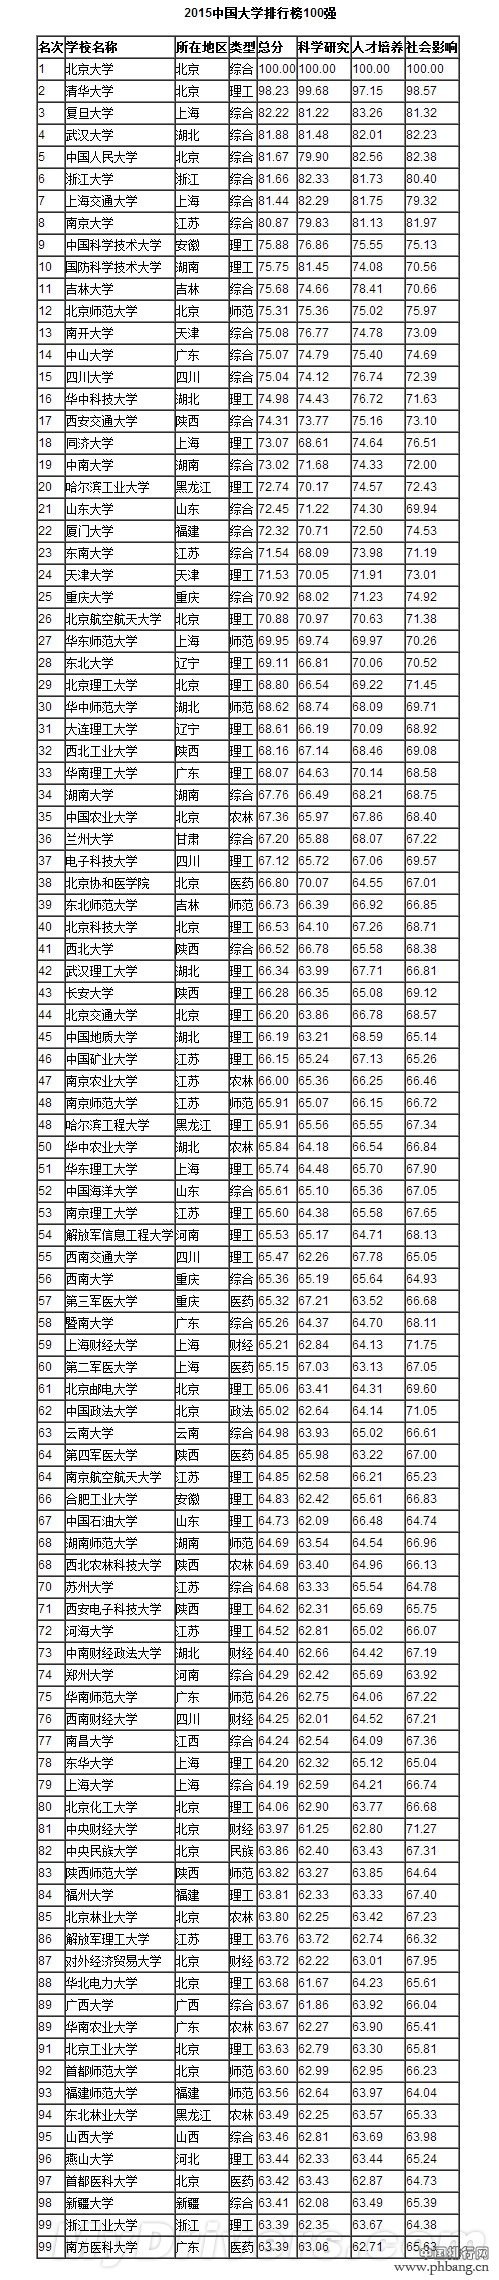 2015中国一流大学排行榜